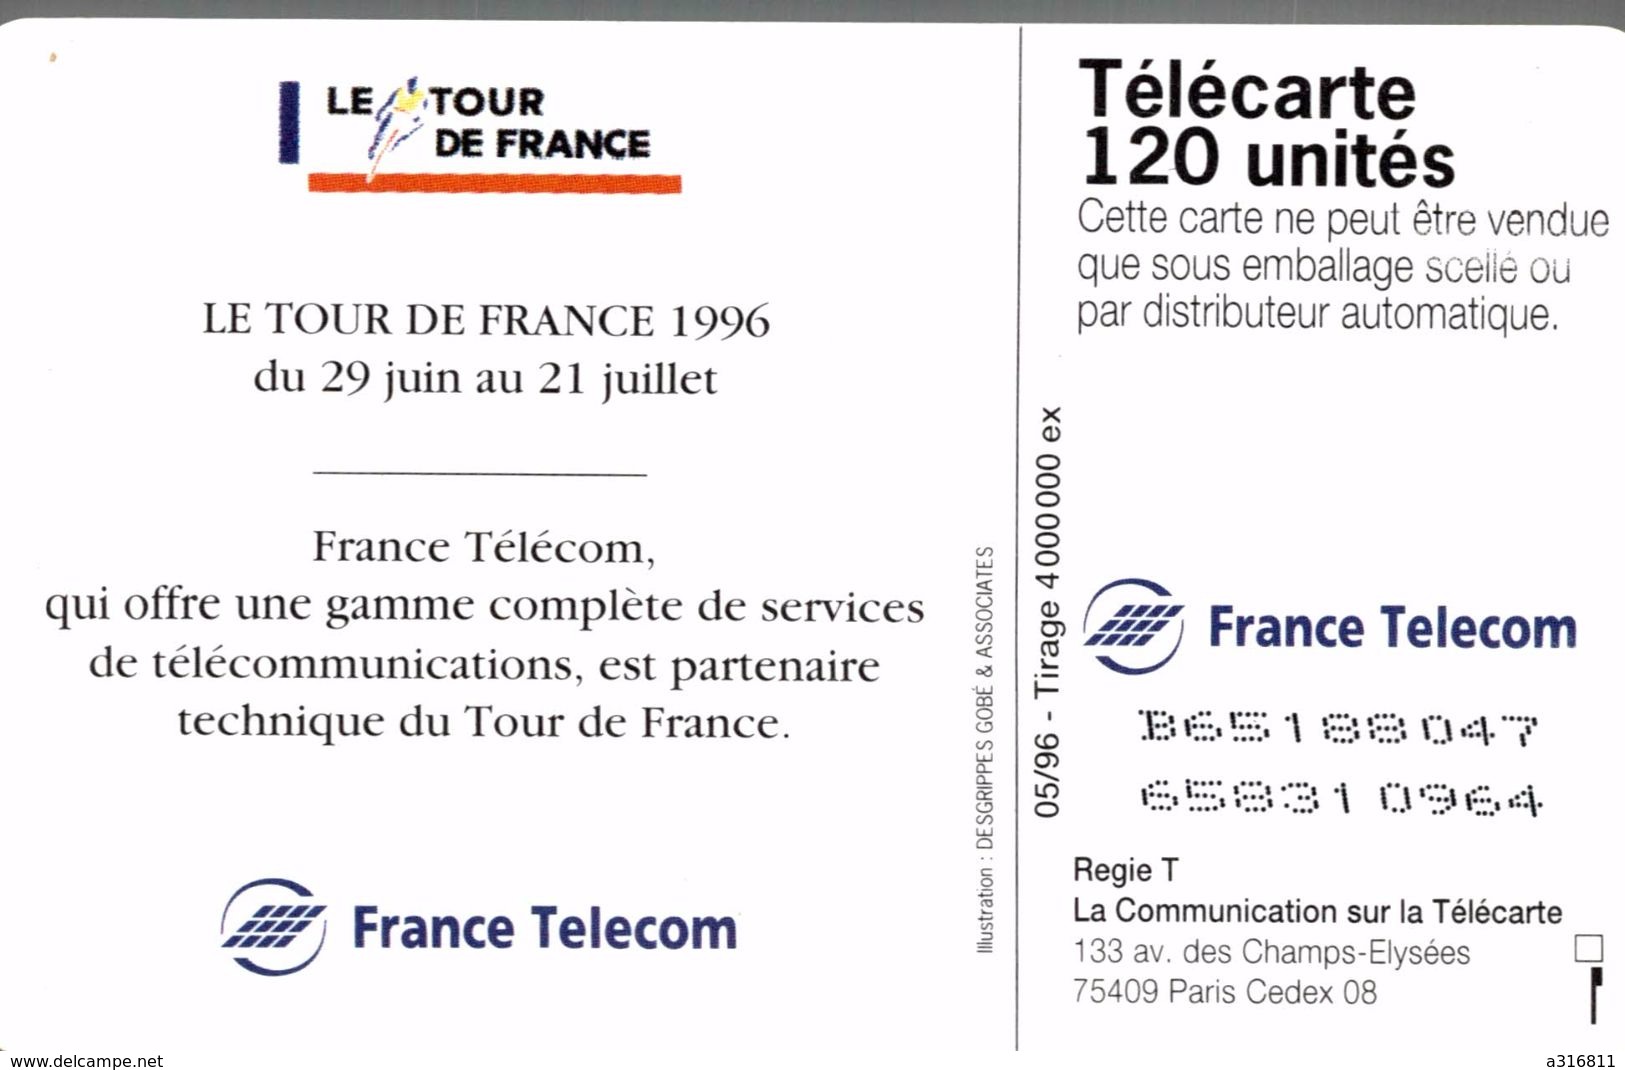 LE TOUR DE FRANCE 96 - 120 Unidades